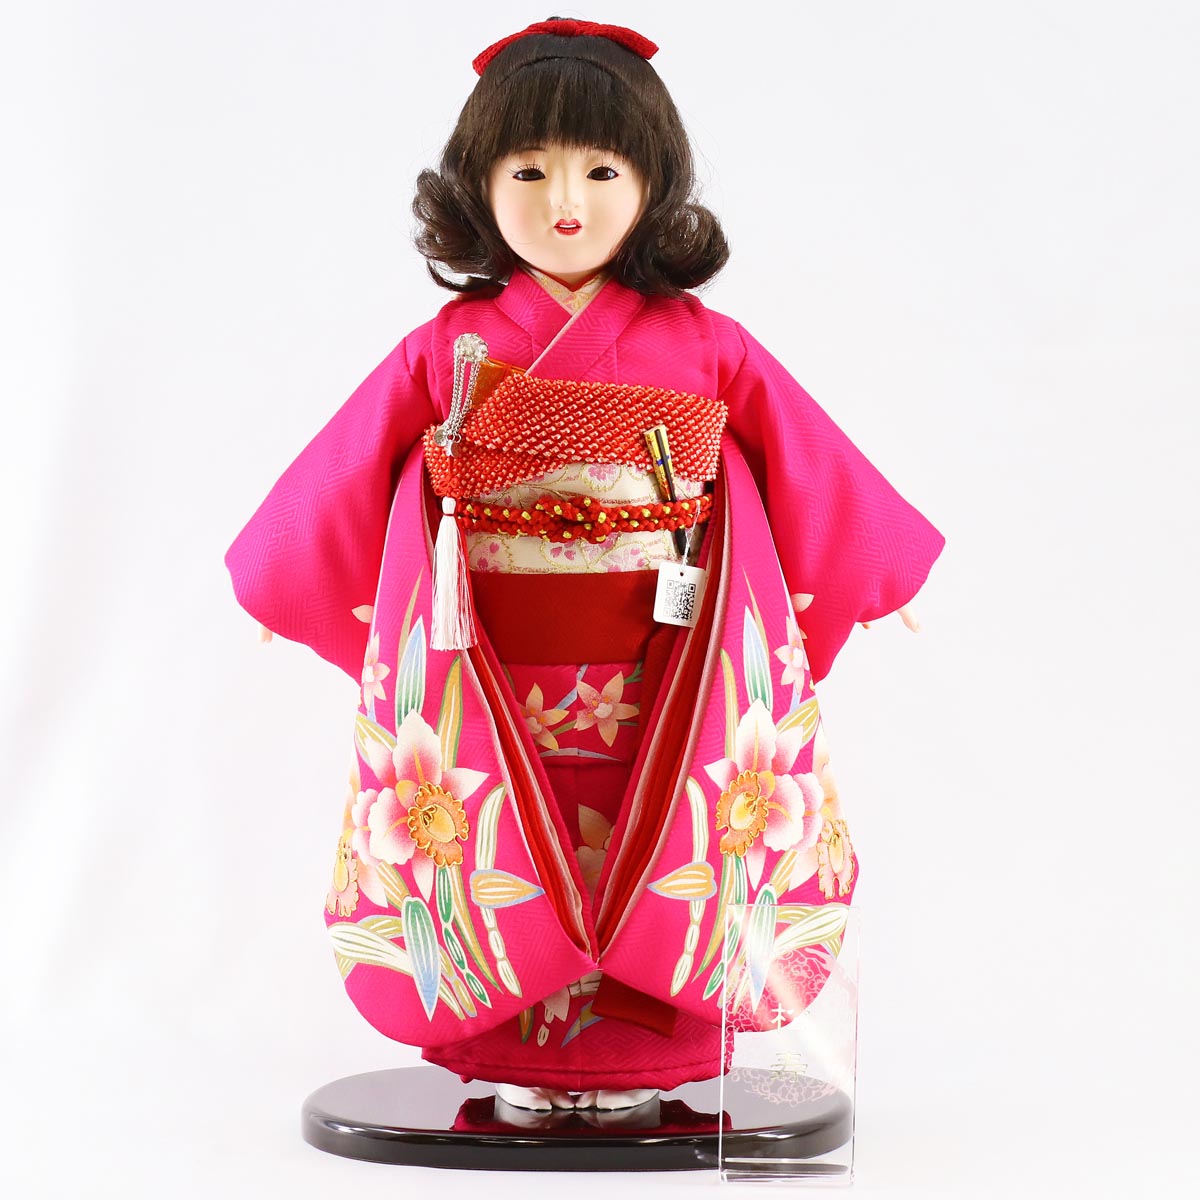 ひな祭りの由来や歴史、雛人形を飾ることの意味や、雛人形のご購入前後によくある質問をまとめました。本格的な段飾りから、コンパクトな収納飾りやケース飾りなど様々なタイプをご用意しております。 松寿作 市松人形 金彩京友禅 カトレア ■松寿作　市松人形 飾った際のサイズ　 高さ47cm 　★ 詳細画像 ※小さい画像をクリックすると拡大表示されます。※スマホの場合は画像を左右にスワイプすると次の画像が表示されます。 商品名商品番号 松寿作 市松人形 金彩京友禅 カトレアICMY-RE12-44 飾った際のサイズ 高さ47cm ギフト対応 大切な方へ贈るお祝いやプレゼントに最適なギフト対応を承ります。 　 ギフト対応注文についてはコチラをクリック！（新しいウィンドウで開きます） ※ご自宅へ配送の場合でも、価格の分かる明細書などはお入れしていない為、明細書や領収証が必要な場合はお申し付け下さい。 雛人形は職人が一つ一つ手作りしているため、商品写真と一部仕様が異なる場合がございます。 お人形は衣装の柄の出方や、木製部分は木地の色の濃淡や木目の出方が画像と異なります。 また、使用しているモニターやOSなどの環境によって、色や風合いが違って見える場合がございます。 予めご了承ください。